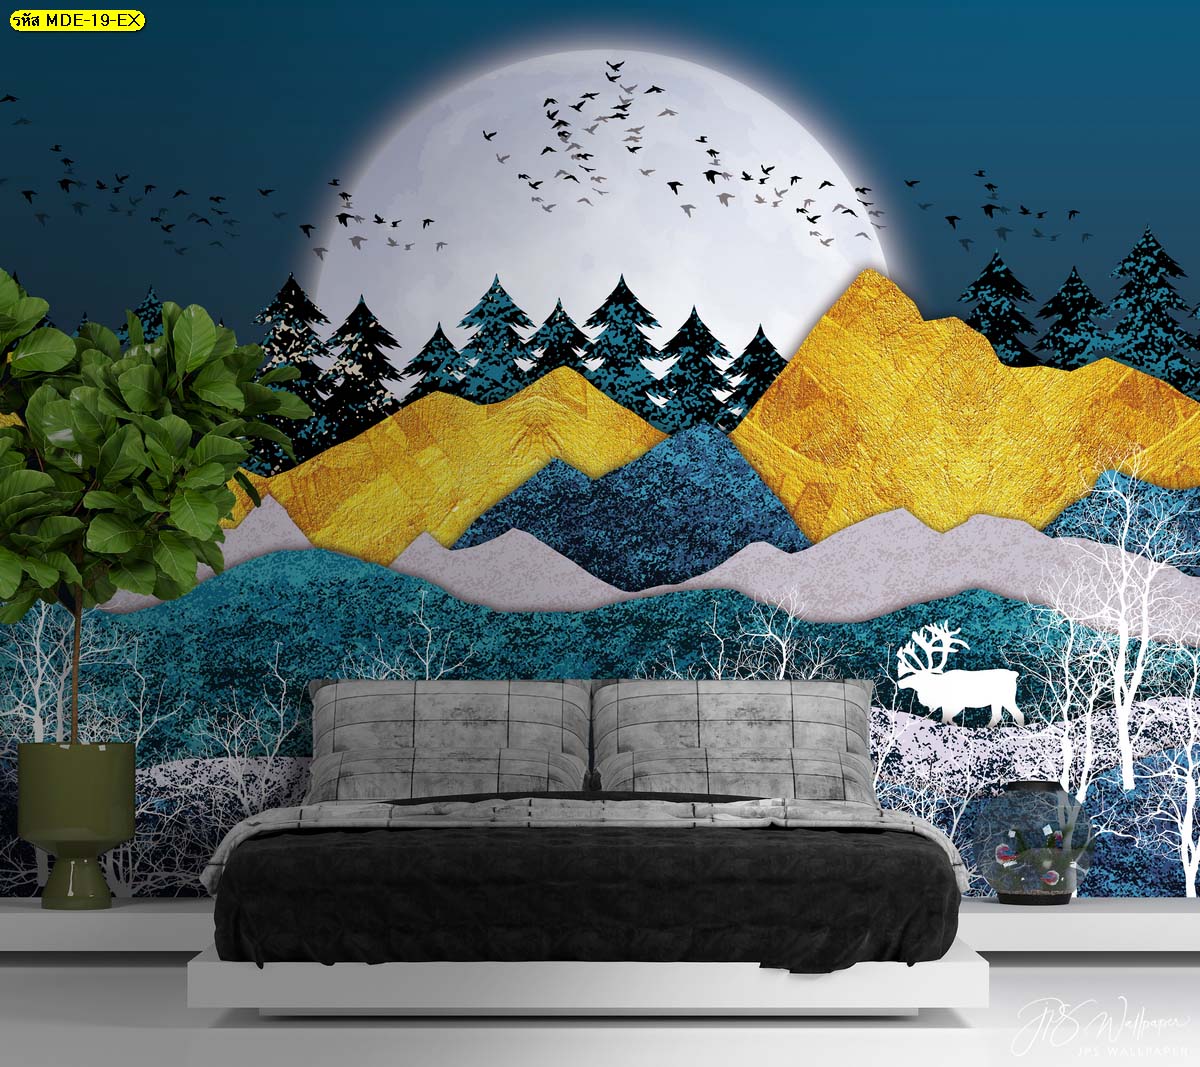 ภาพวอลเปเปอร์ลายทันสมัย วอลเปเปอร์ตกแต่งหัวเตียง วอลเปเปอร์ลายภูเขาสีทองและดวงจันทร์